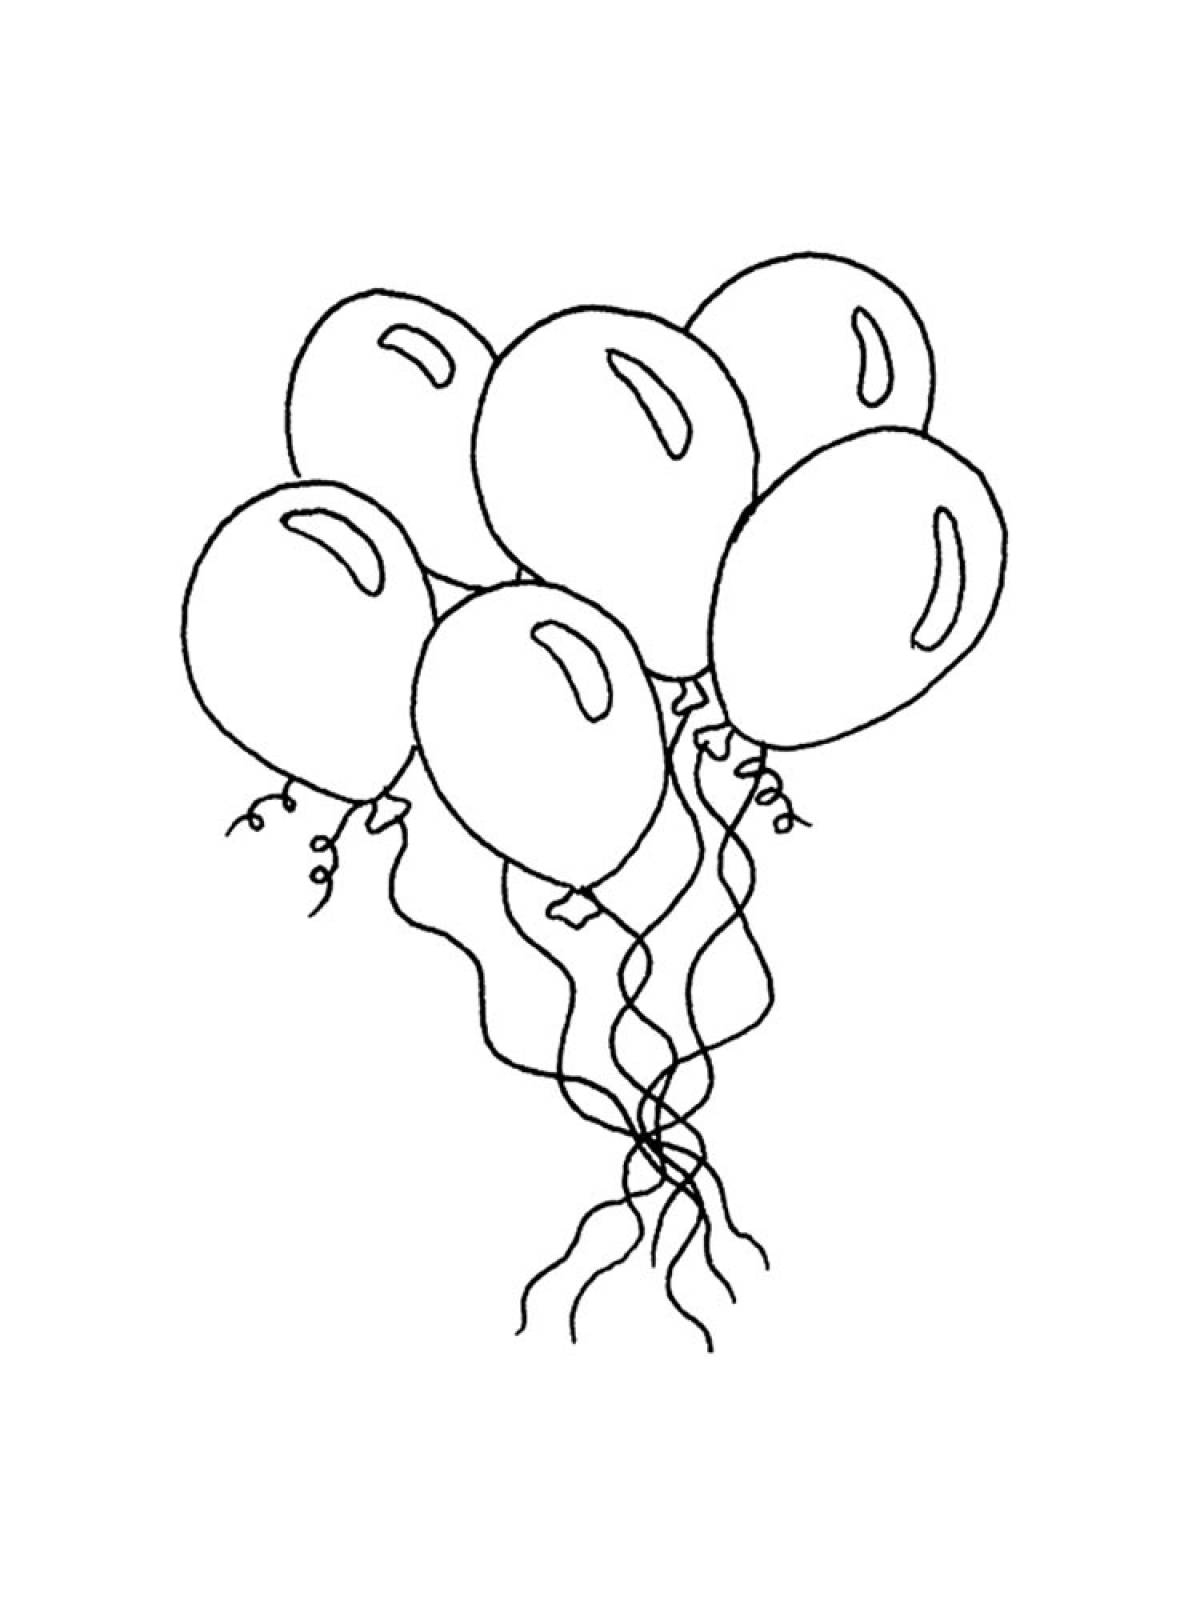 страница 2 | Воздушный шарик раскраска Изображения – скачать бесплатно на Freepik